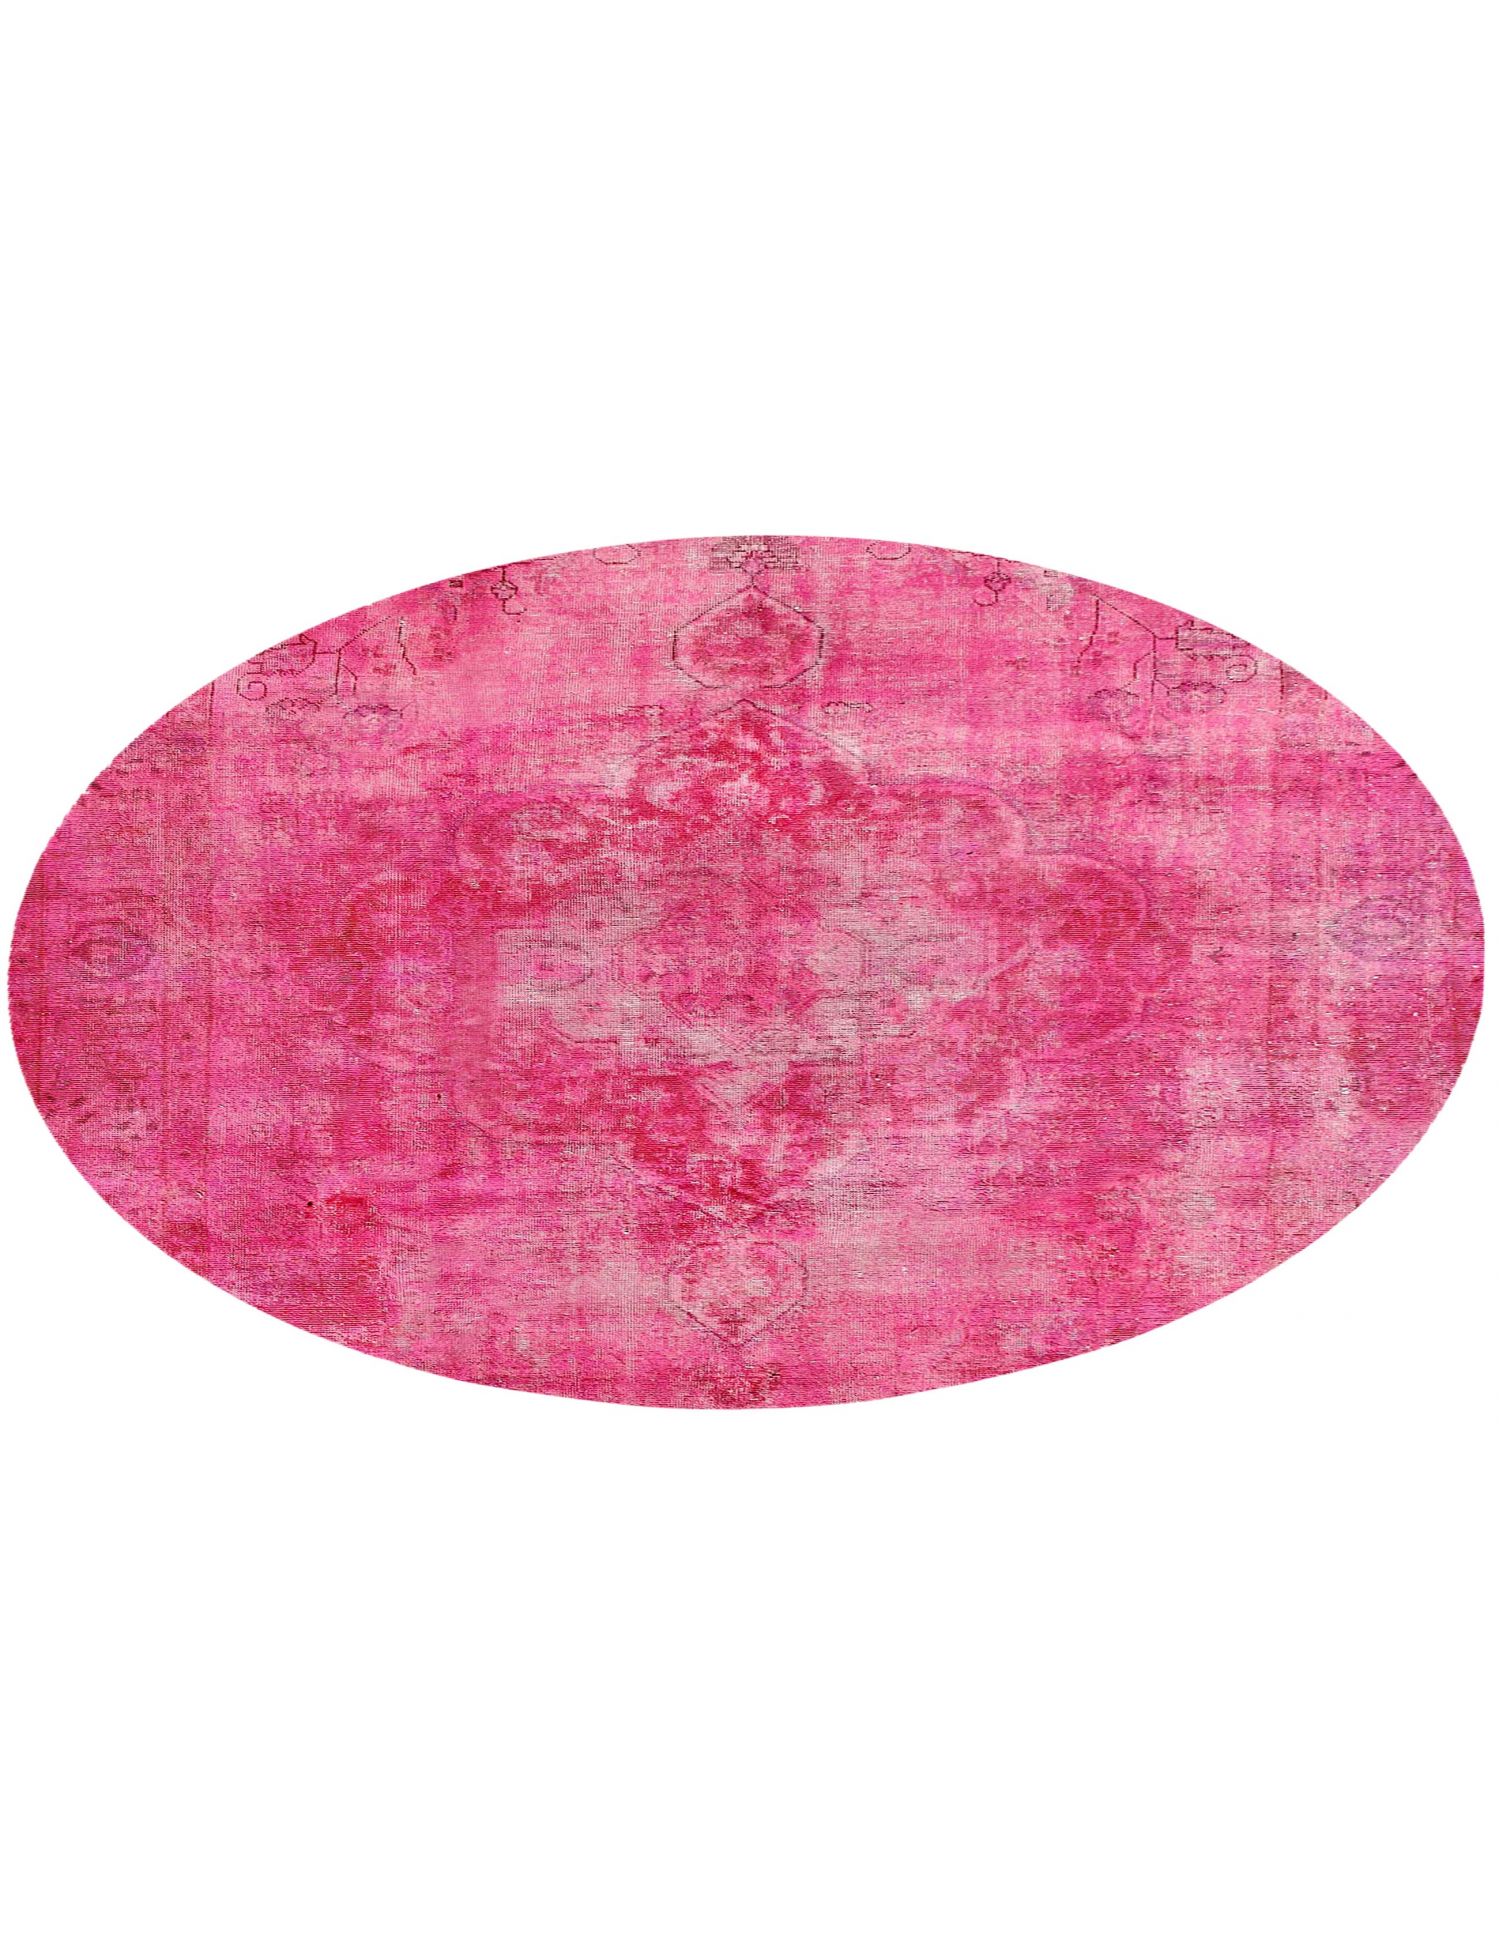 Rund  Vintage Teppich  rosa <br/>290 x 290 cm